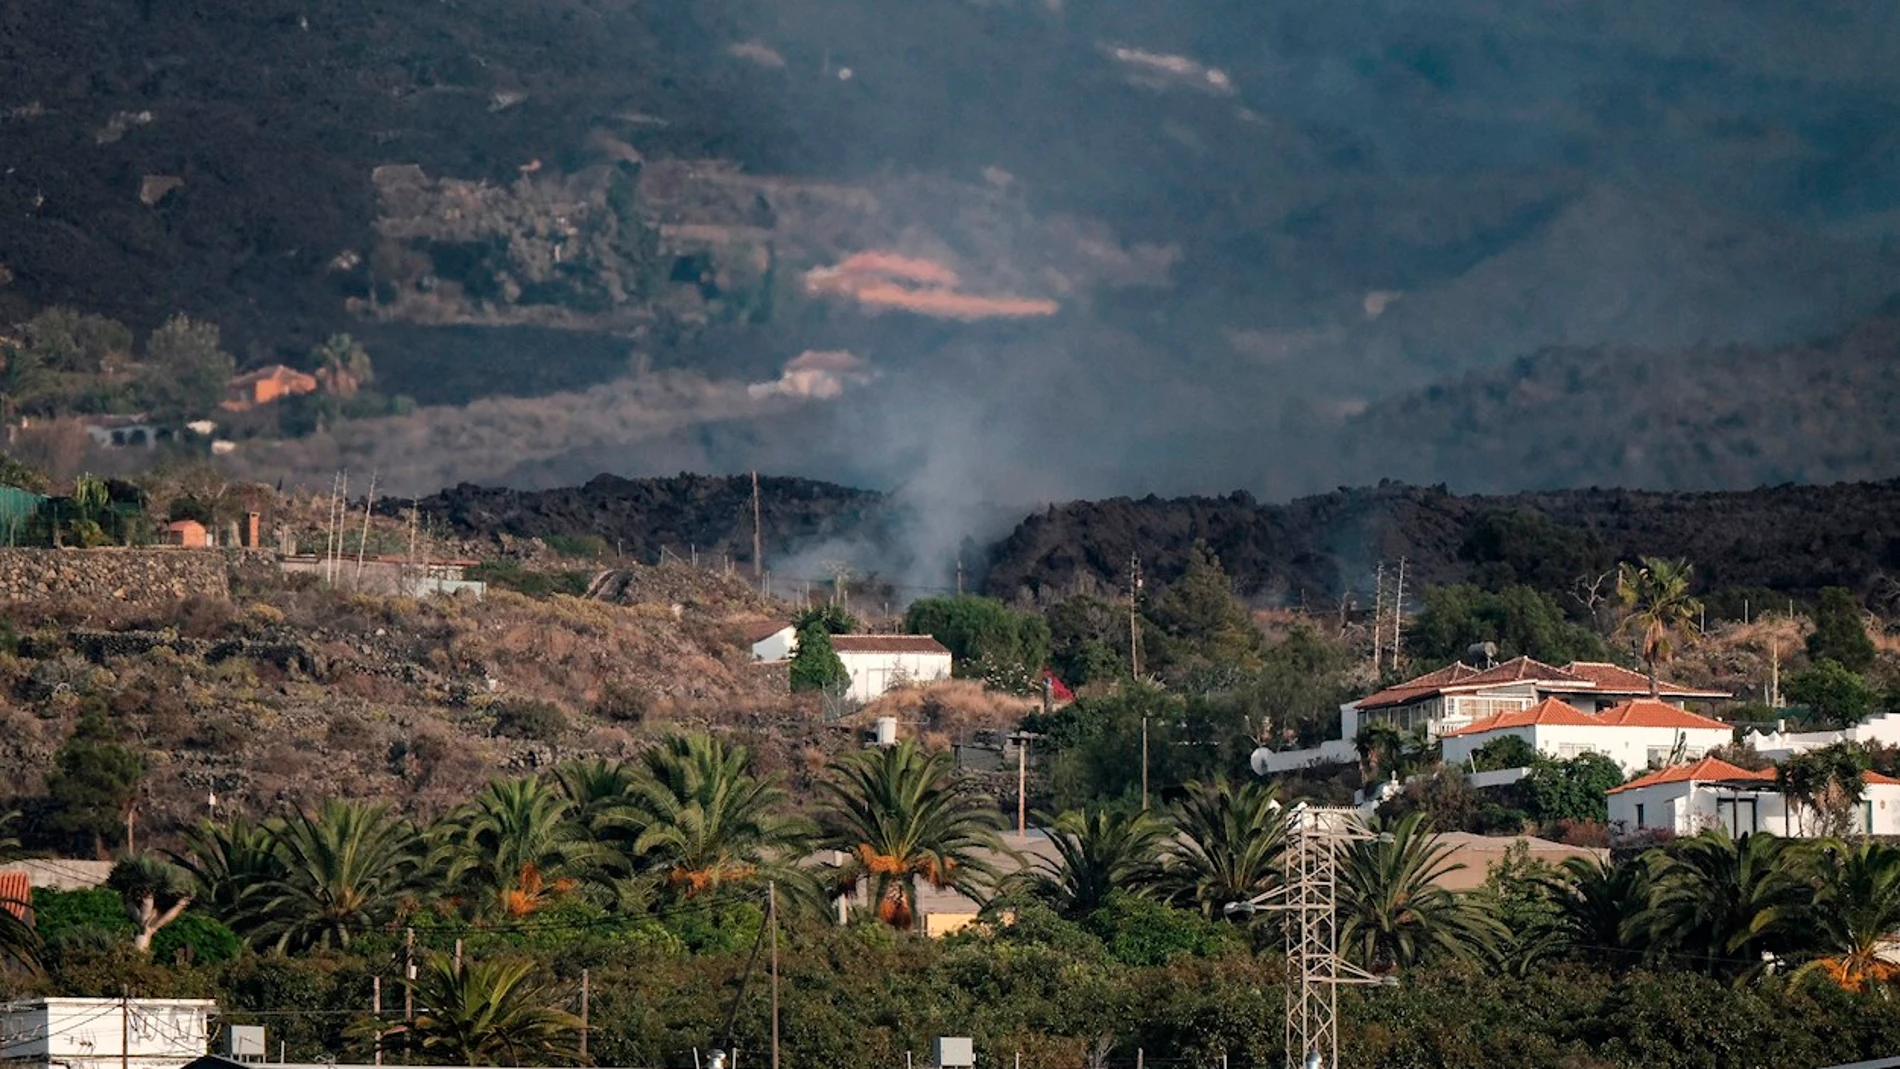 magen hoy Domingo de la colada de lava expulsada por el volcán Cumbre Vieja de La Palma por encima del pueblo palmeño de Todoque